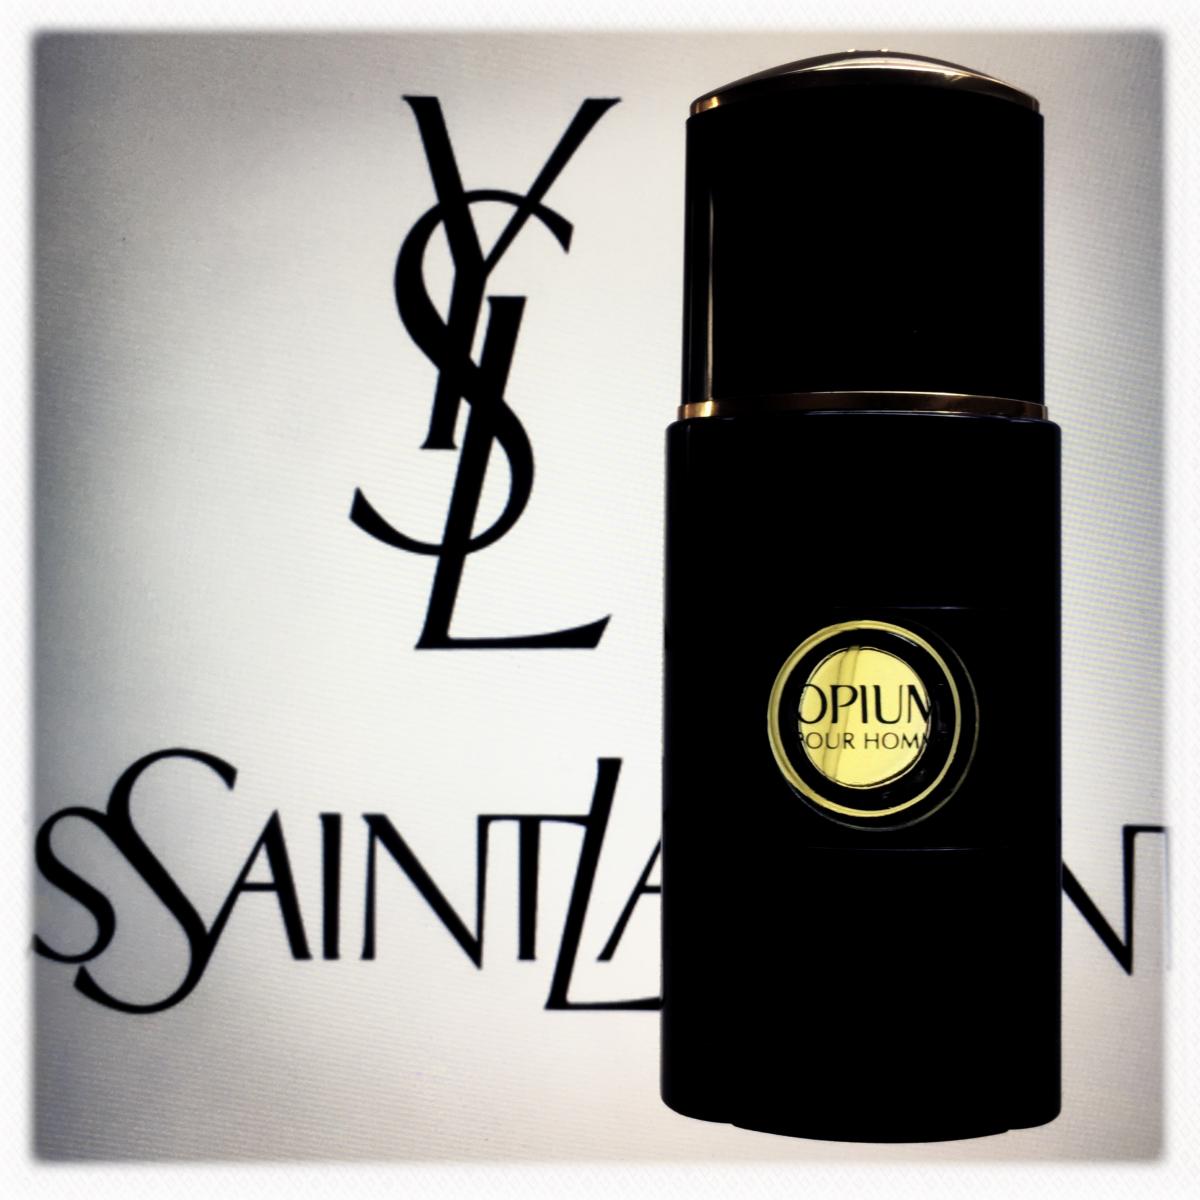 Opium Pour Homme Eau de Parfum Yves Saint Laurent - una fragranza da